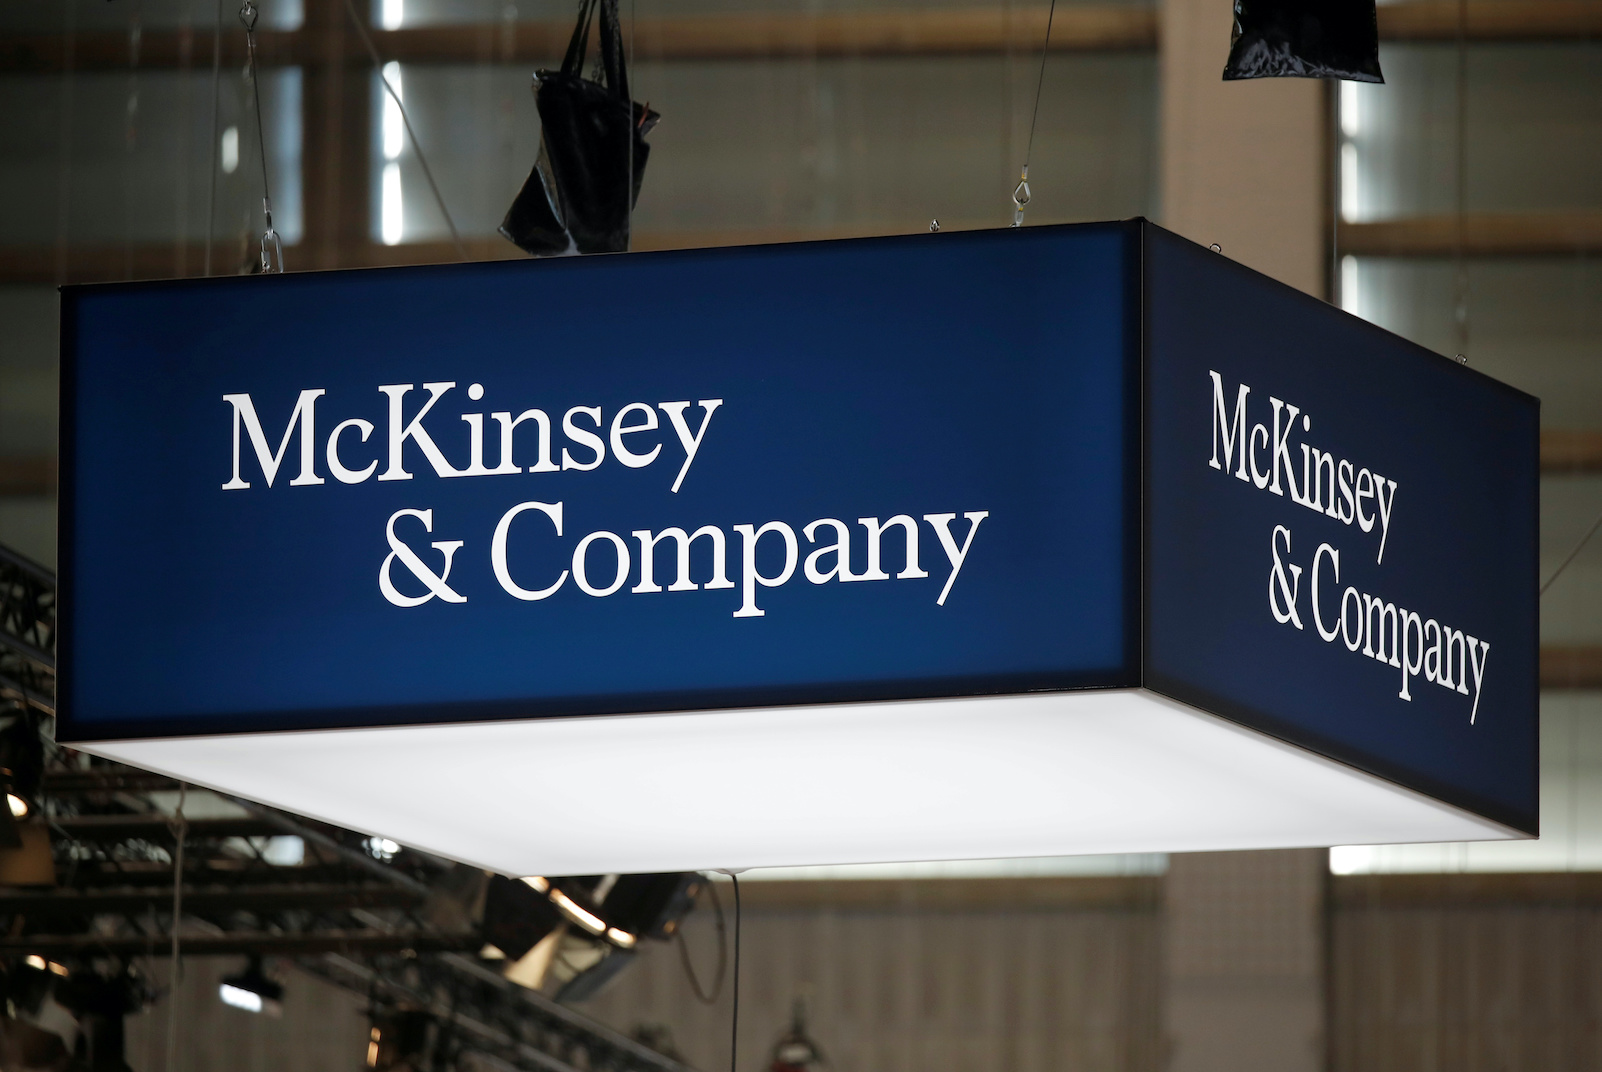 L'affaire McKinsey s'accélère : perquisition en cours au siège français du cabinet